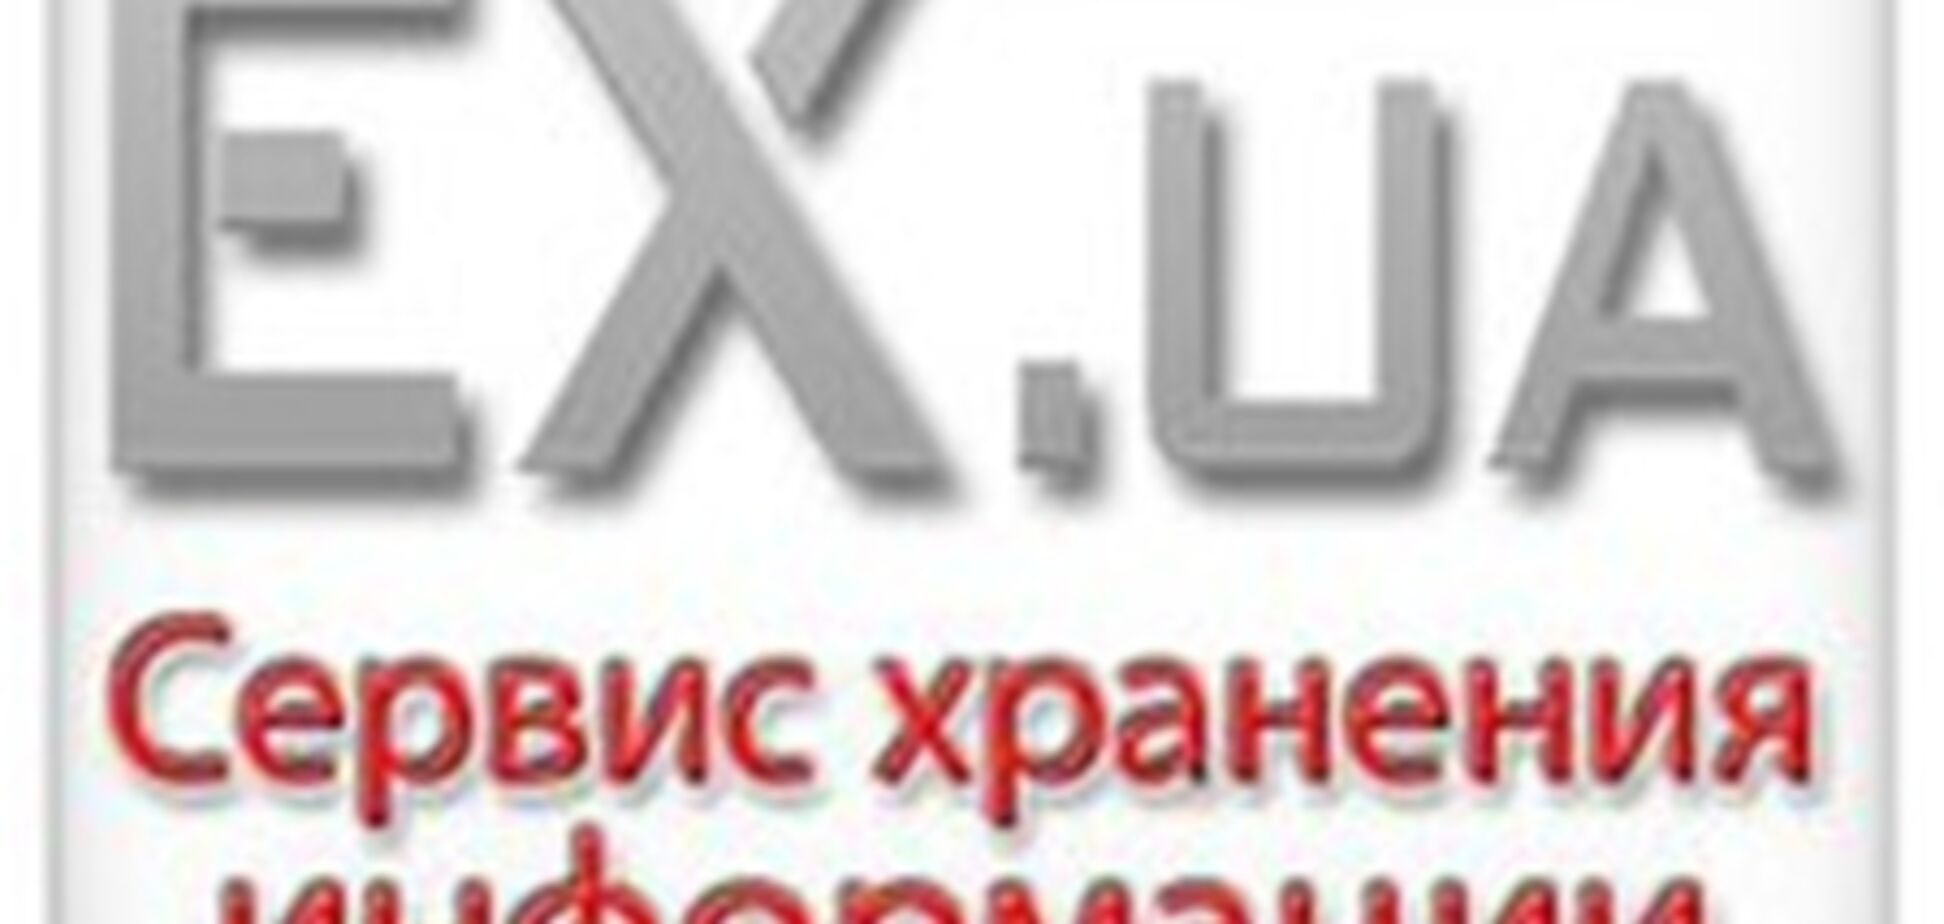 Внутреннее расследование в МВД по делу EX.ua привело к увольнению следователя